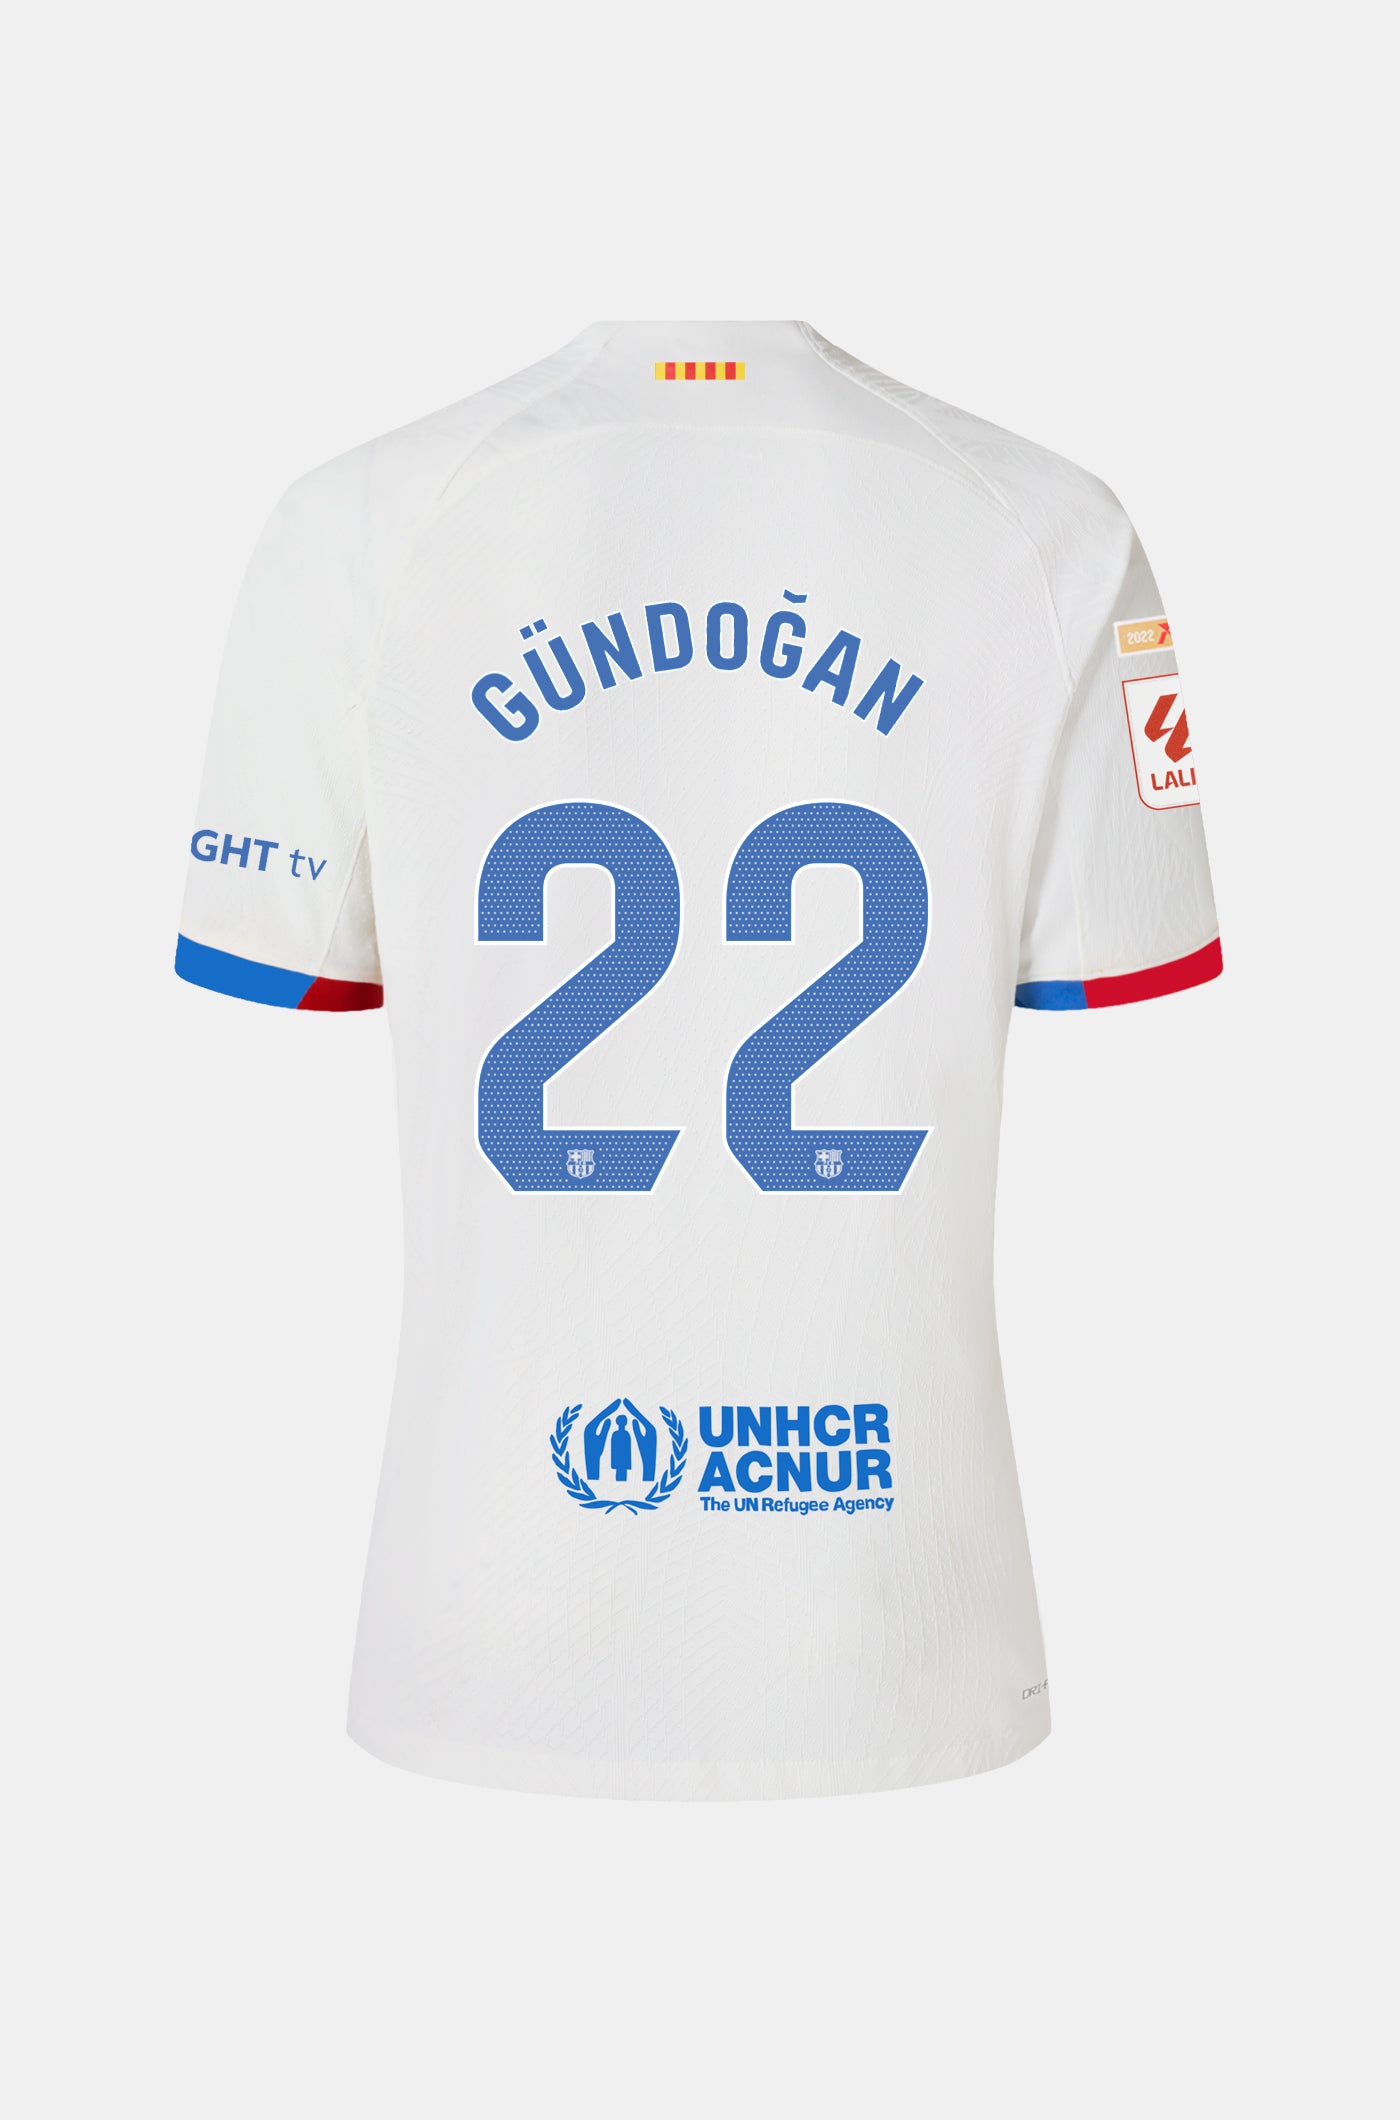 LFP FC Barcelona away shirt 23/24 – Junior - GÜNDO?AN